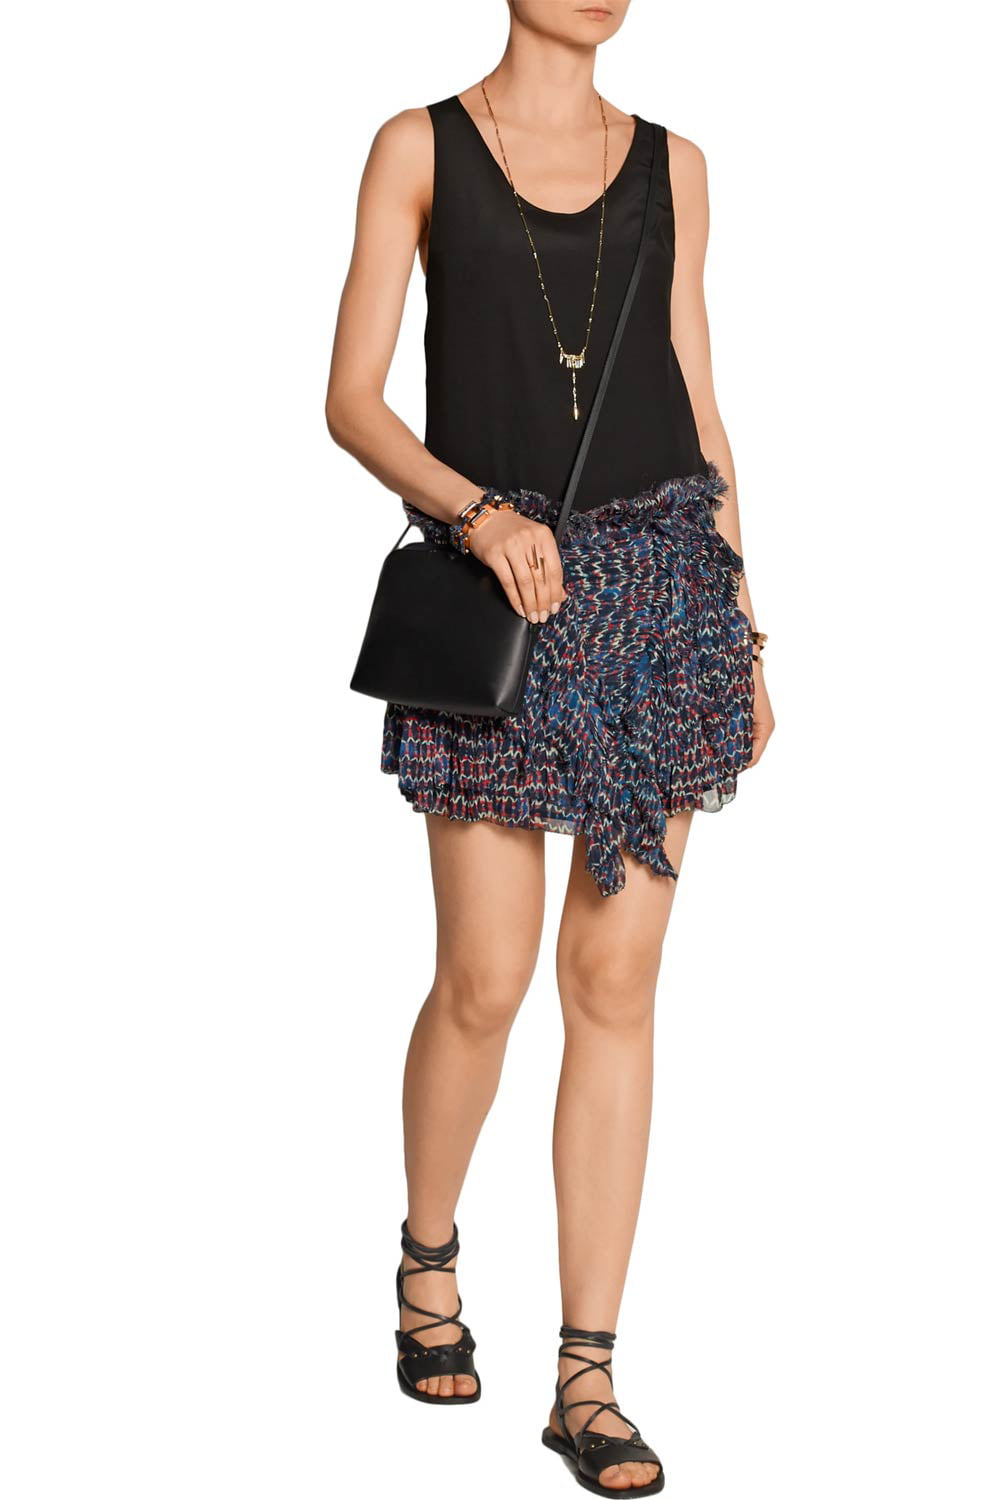 Isabel Marant Womens Melissa Silk-Chiffon Mini Skirt US 2 / 34 Midnight Walmart.com